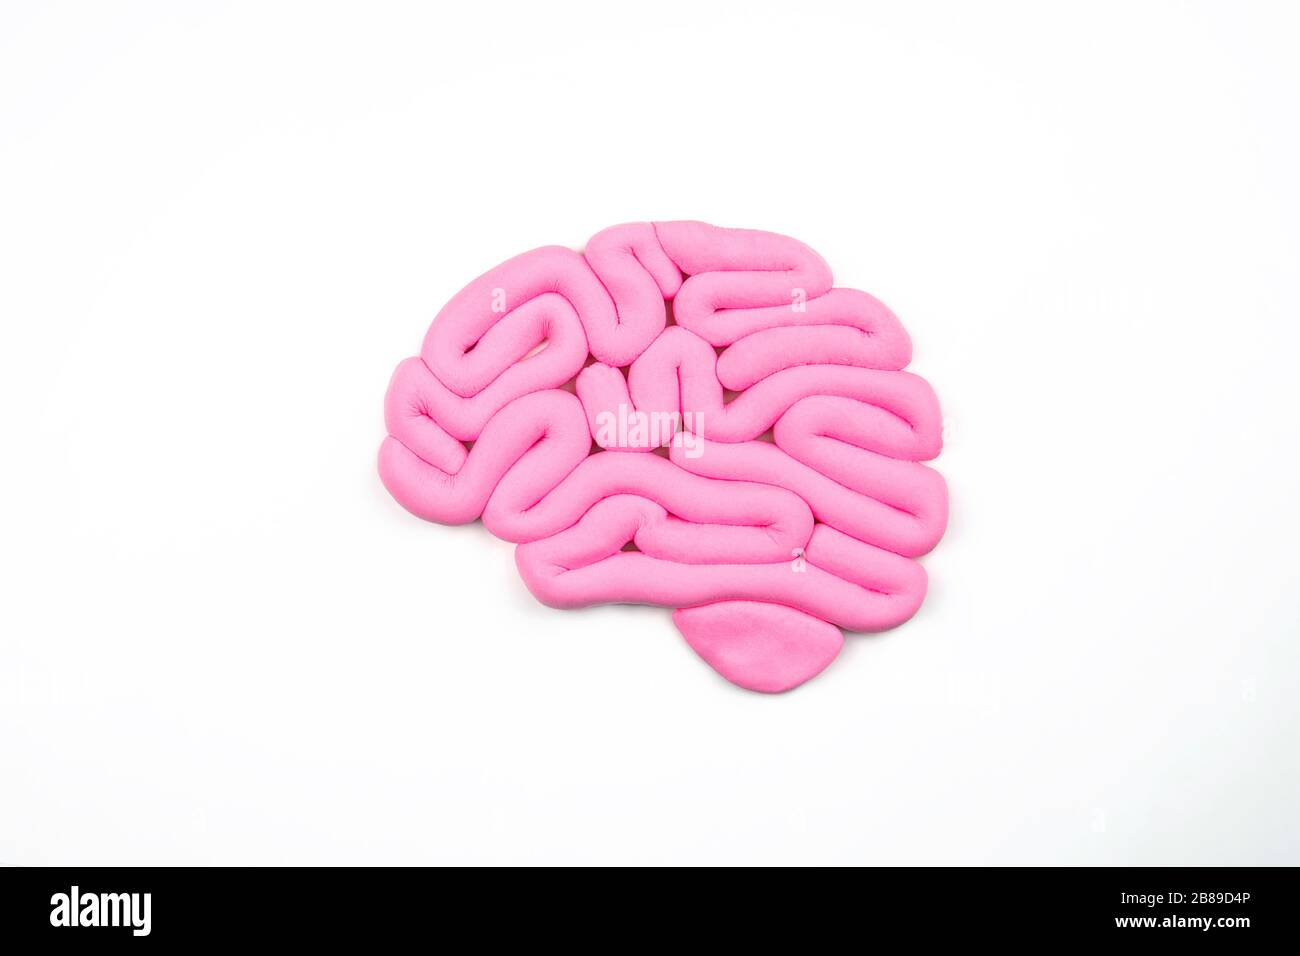 Modell des rosafarbenen menschlichen Gehirns auf weißem Hintergrund. Profilansicht, flache Lage. Intelligenzkonzept. Stockfoto